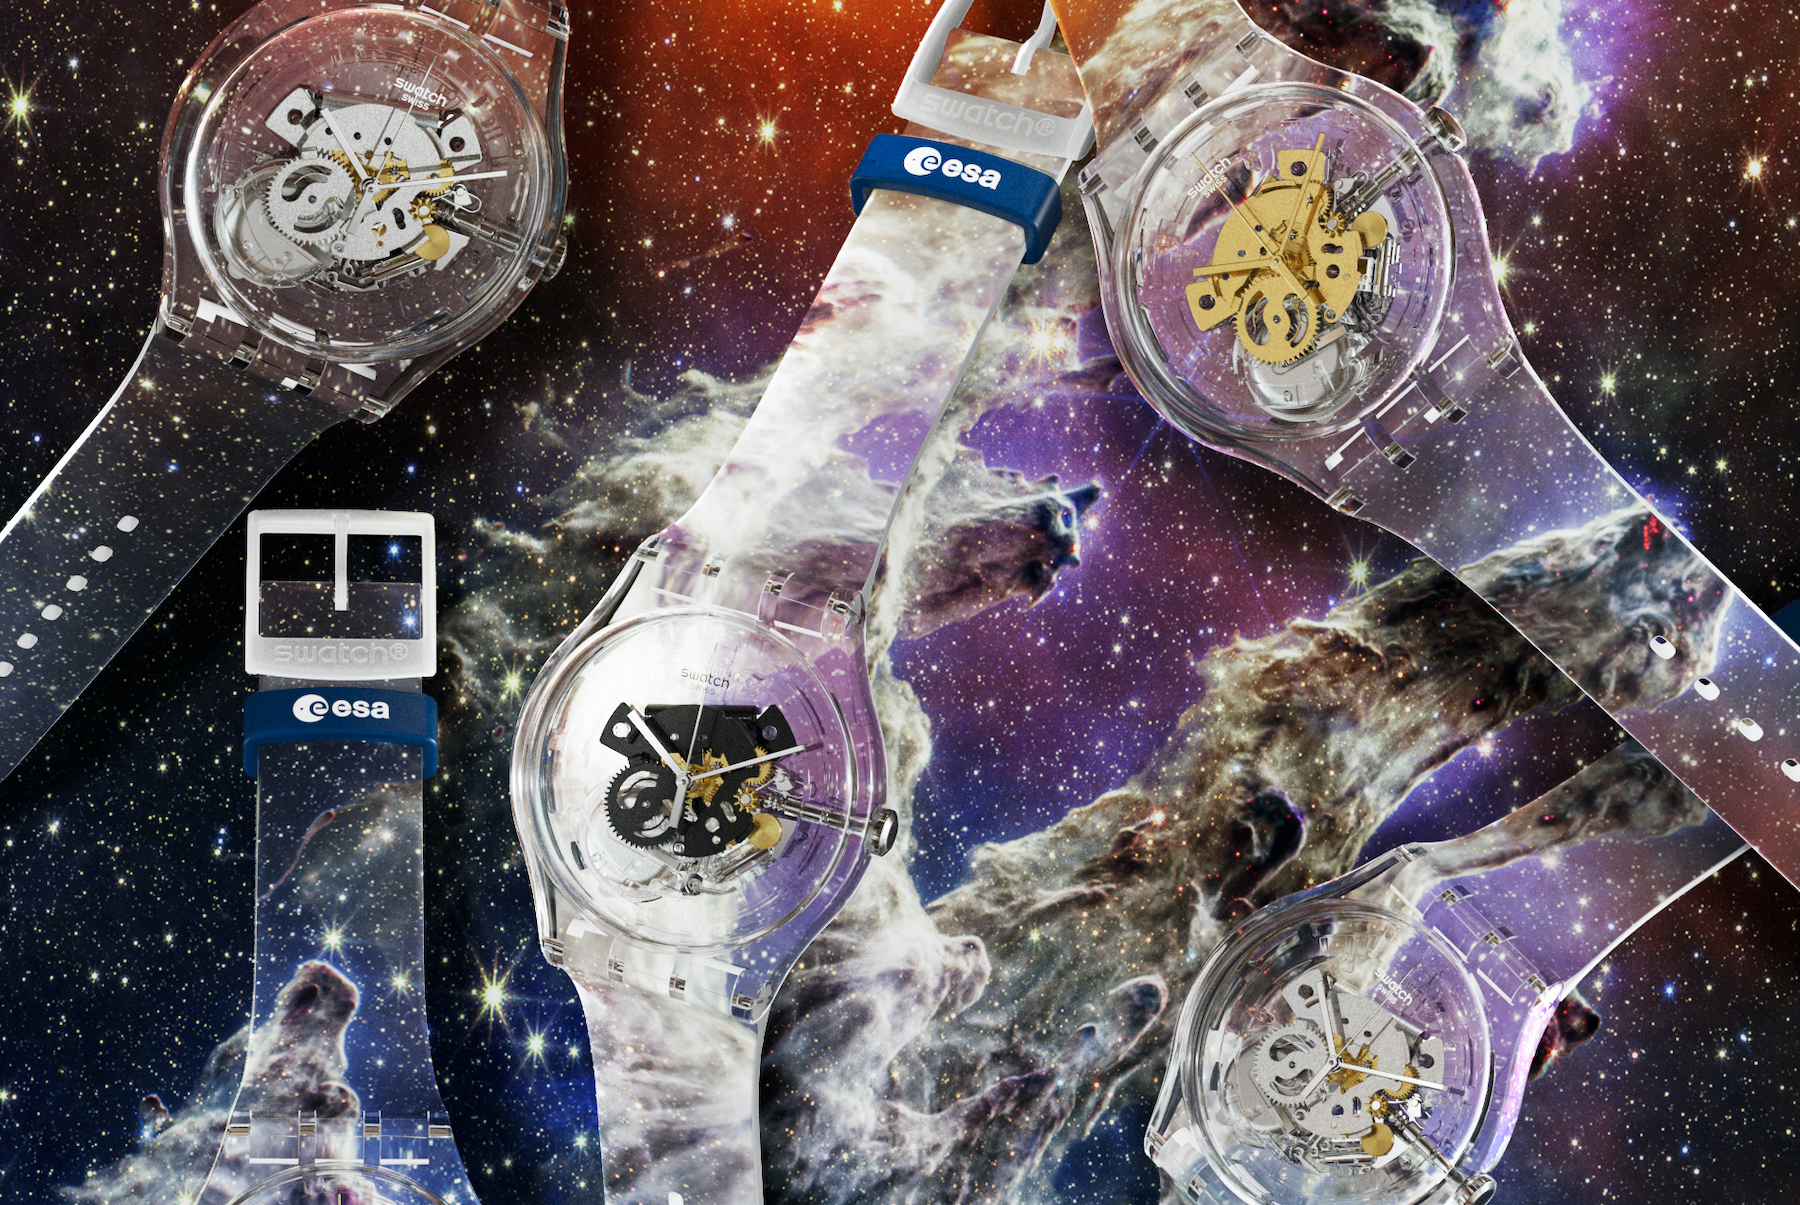 जेम्स वेब स्पेस टेलीस्कोप द्वारा कैप्चर की गई छवियों की विशेषता वाले नए स्वैच डिज़ाइन।